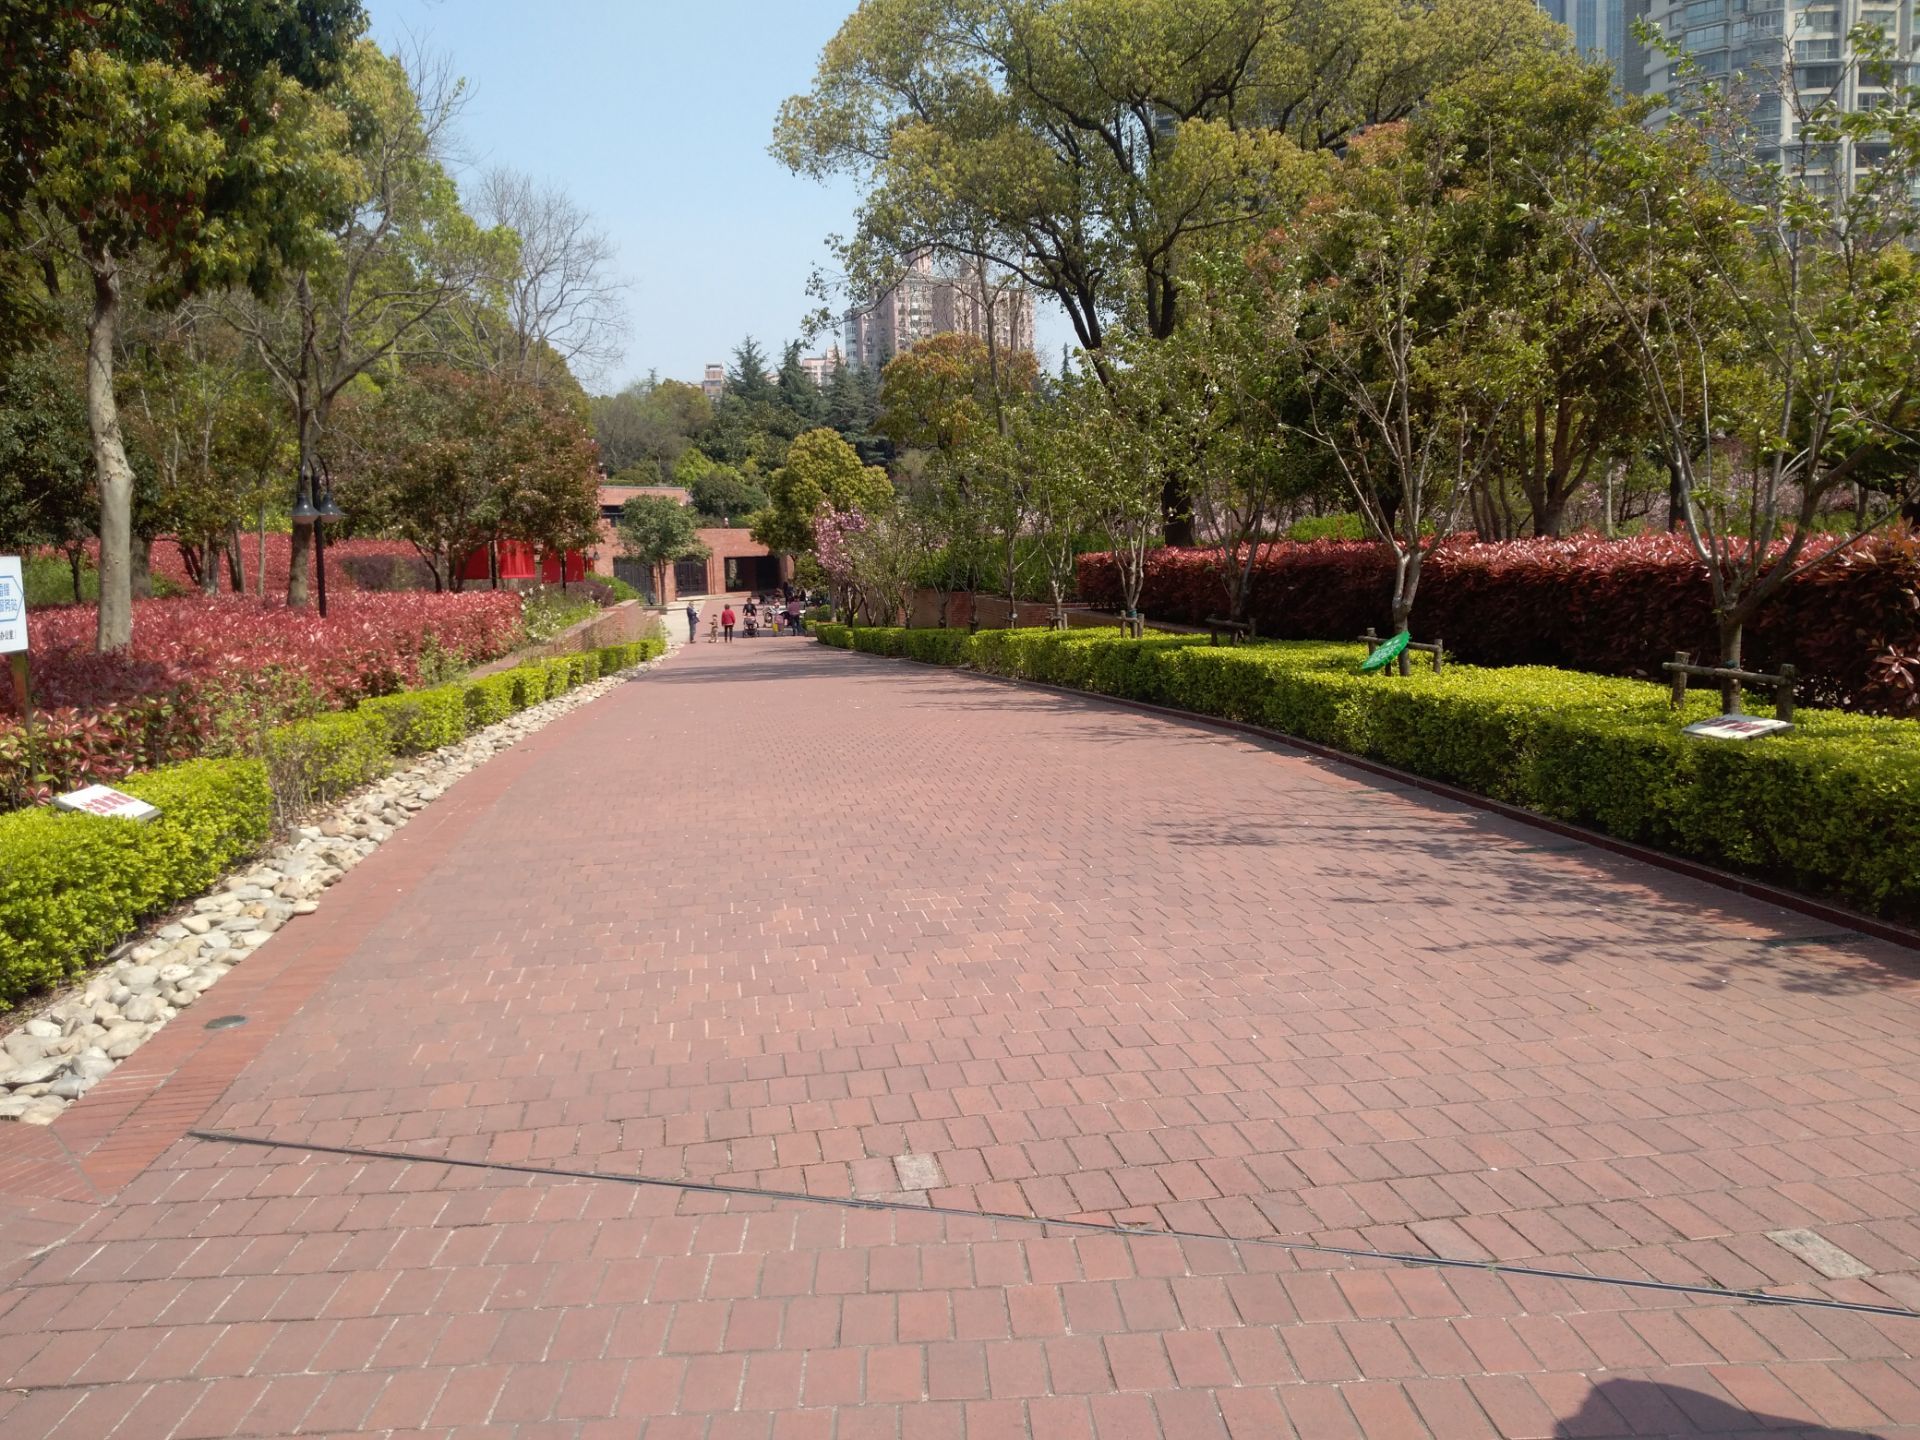 上海四川北路公园位于四川北路的中段,虽然也是一个街区的路边小公园